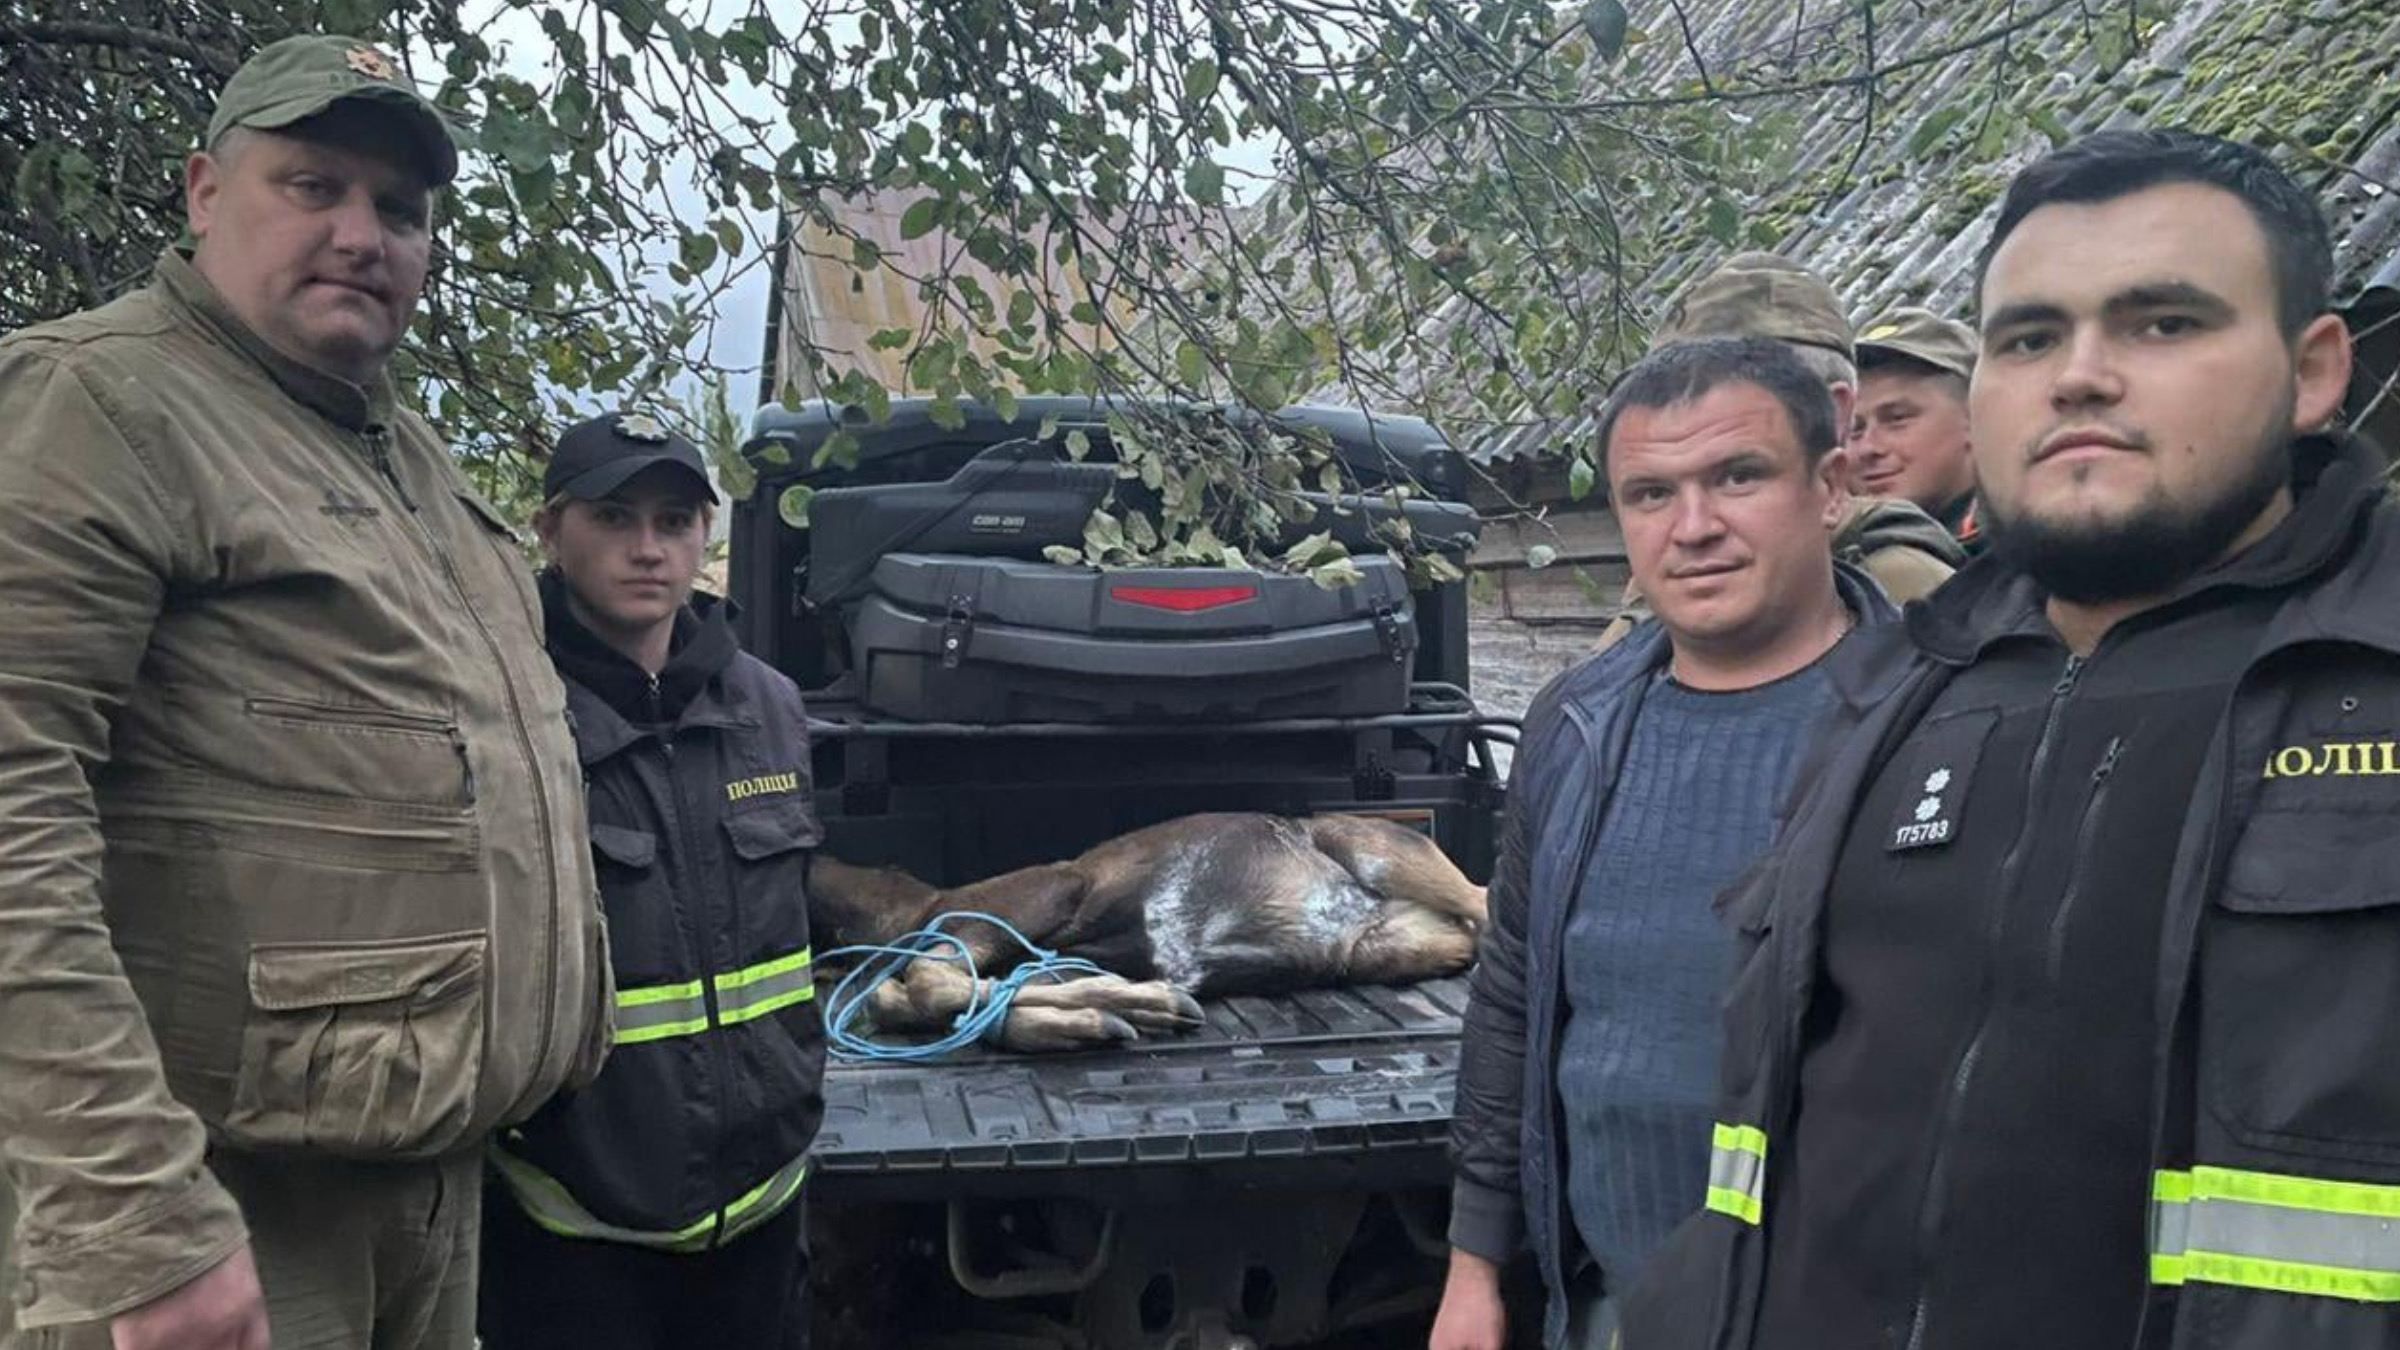 Спасение лосенка: как полиция и неравнодушные помогли раненому животному - Новости Луцка - Pets